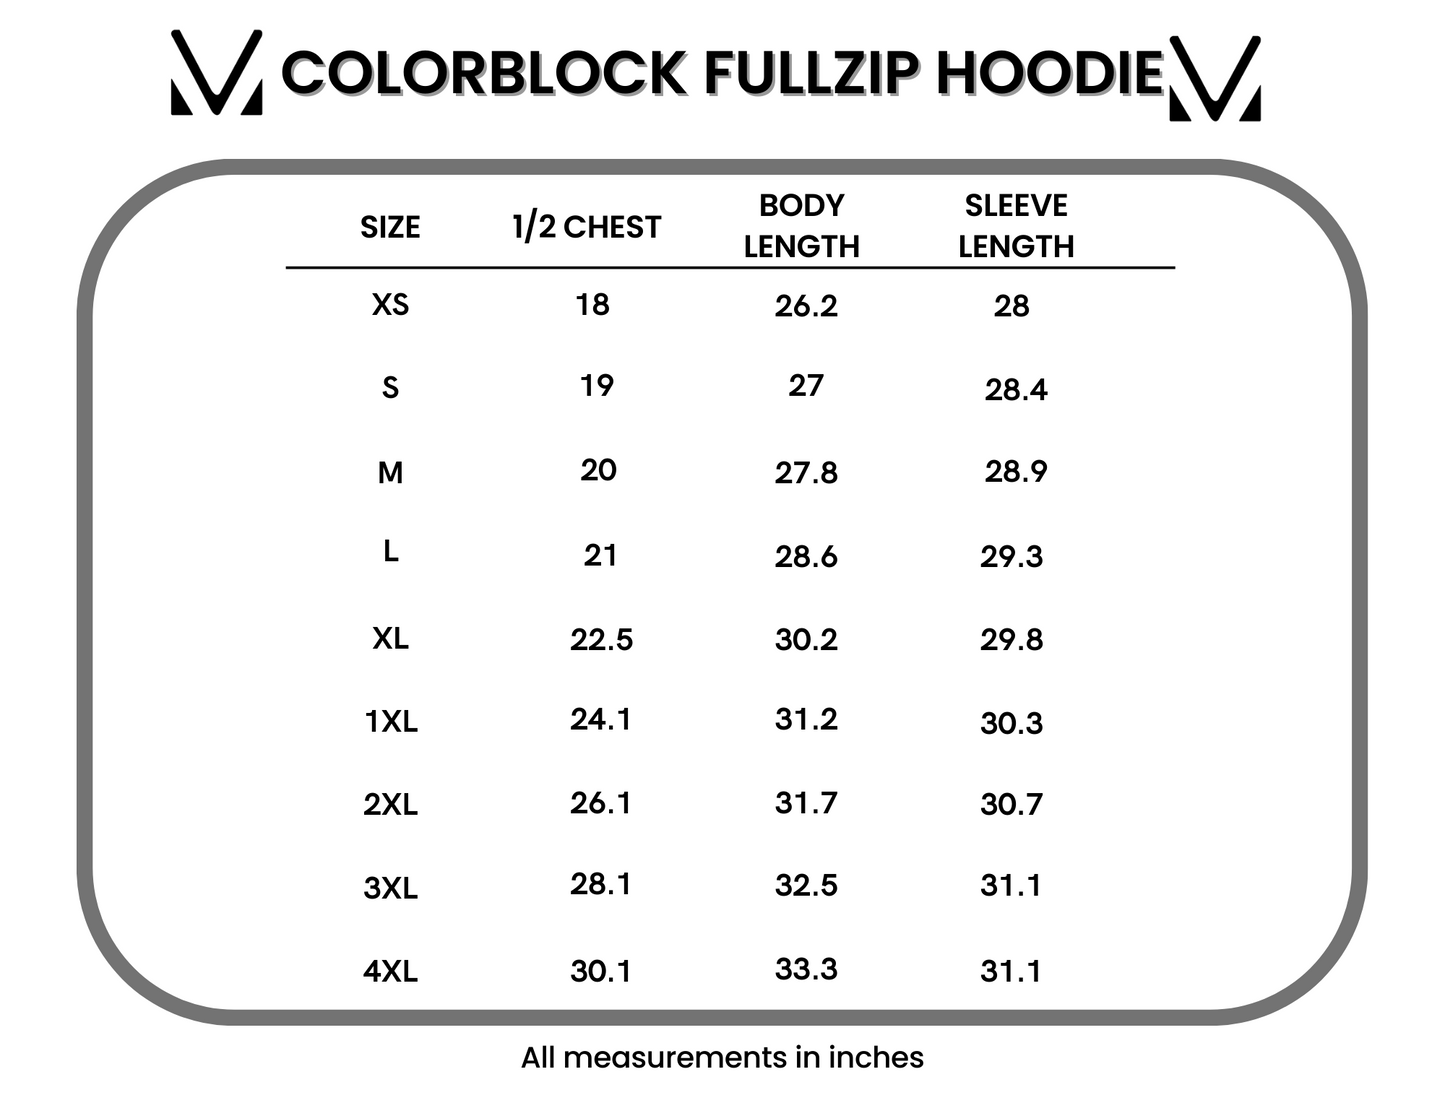 Colorblock Hoodie FullZip - Burgundy, Grey, and Black